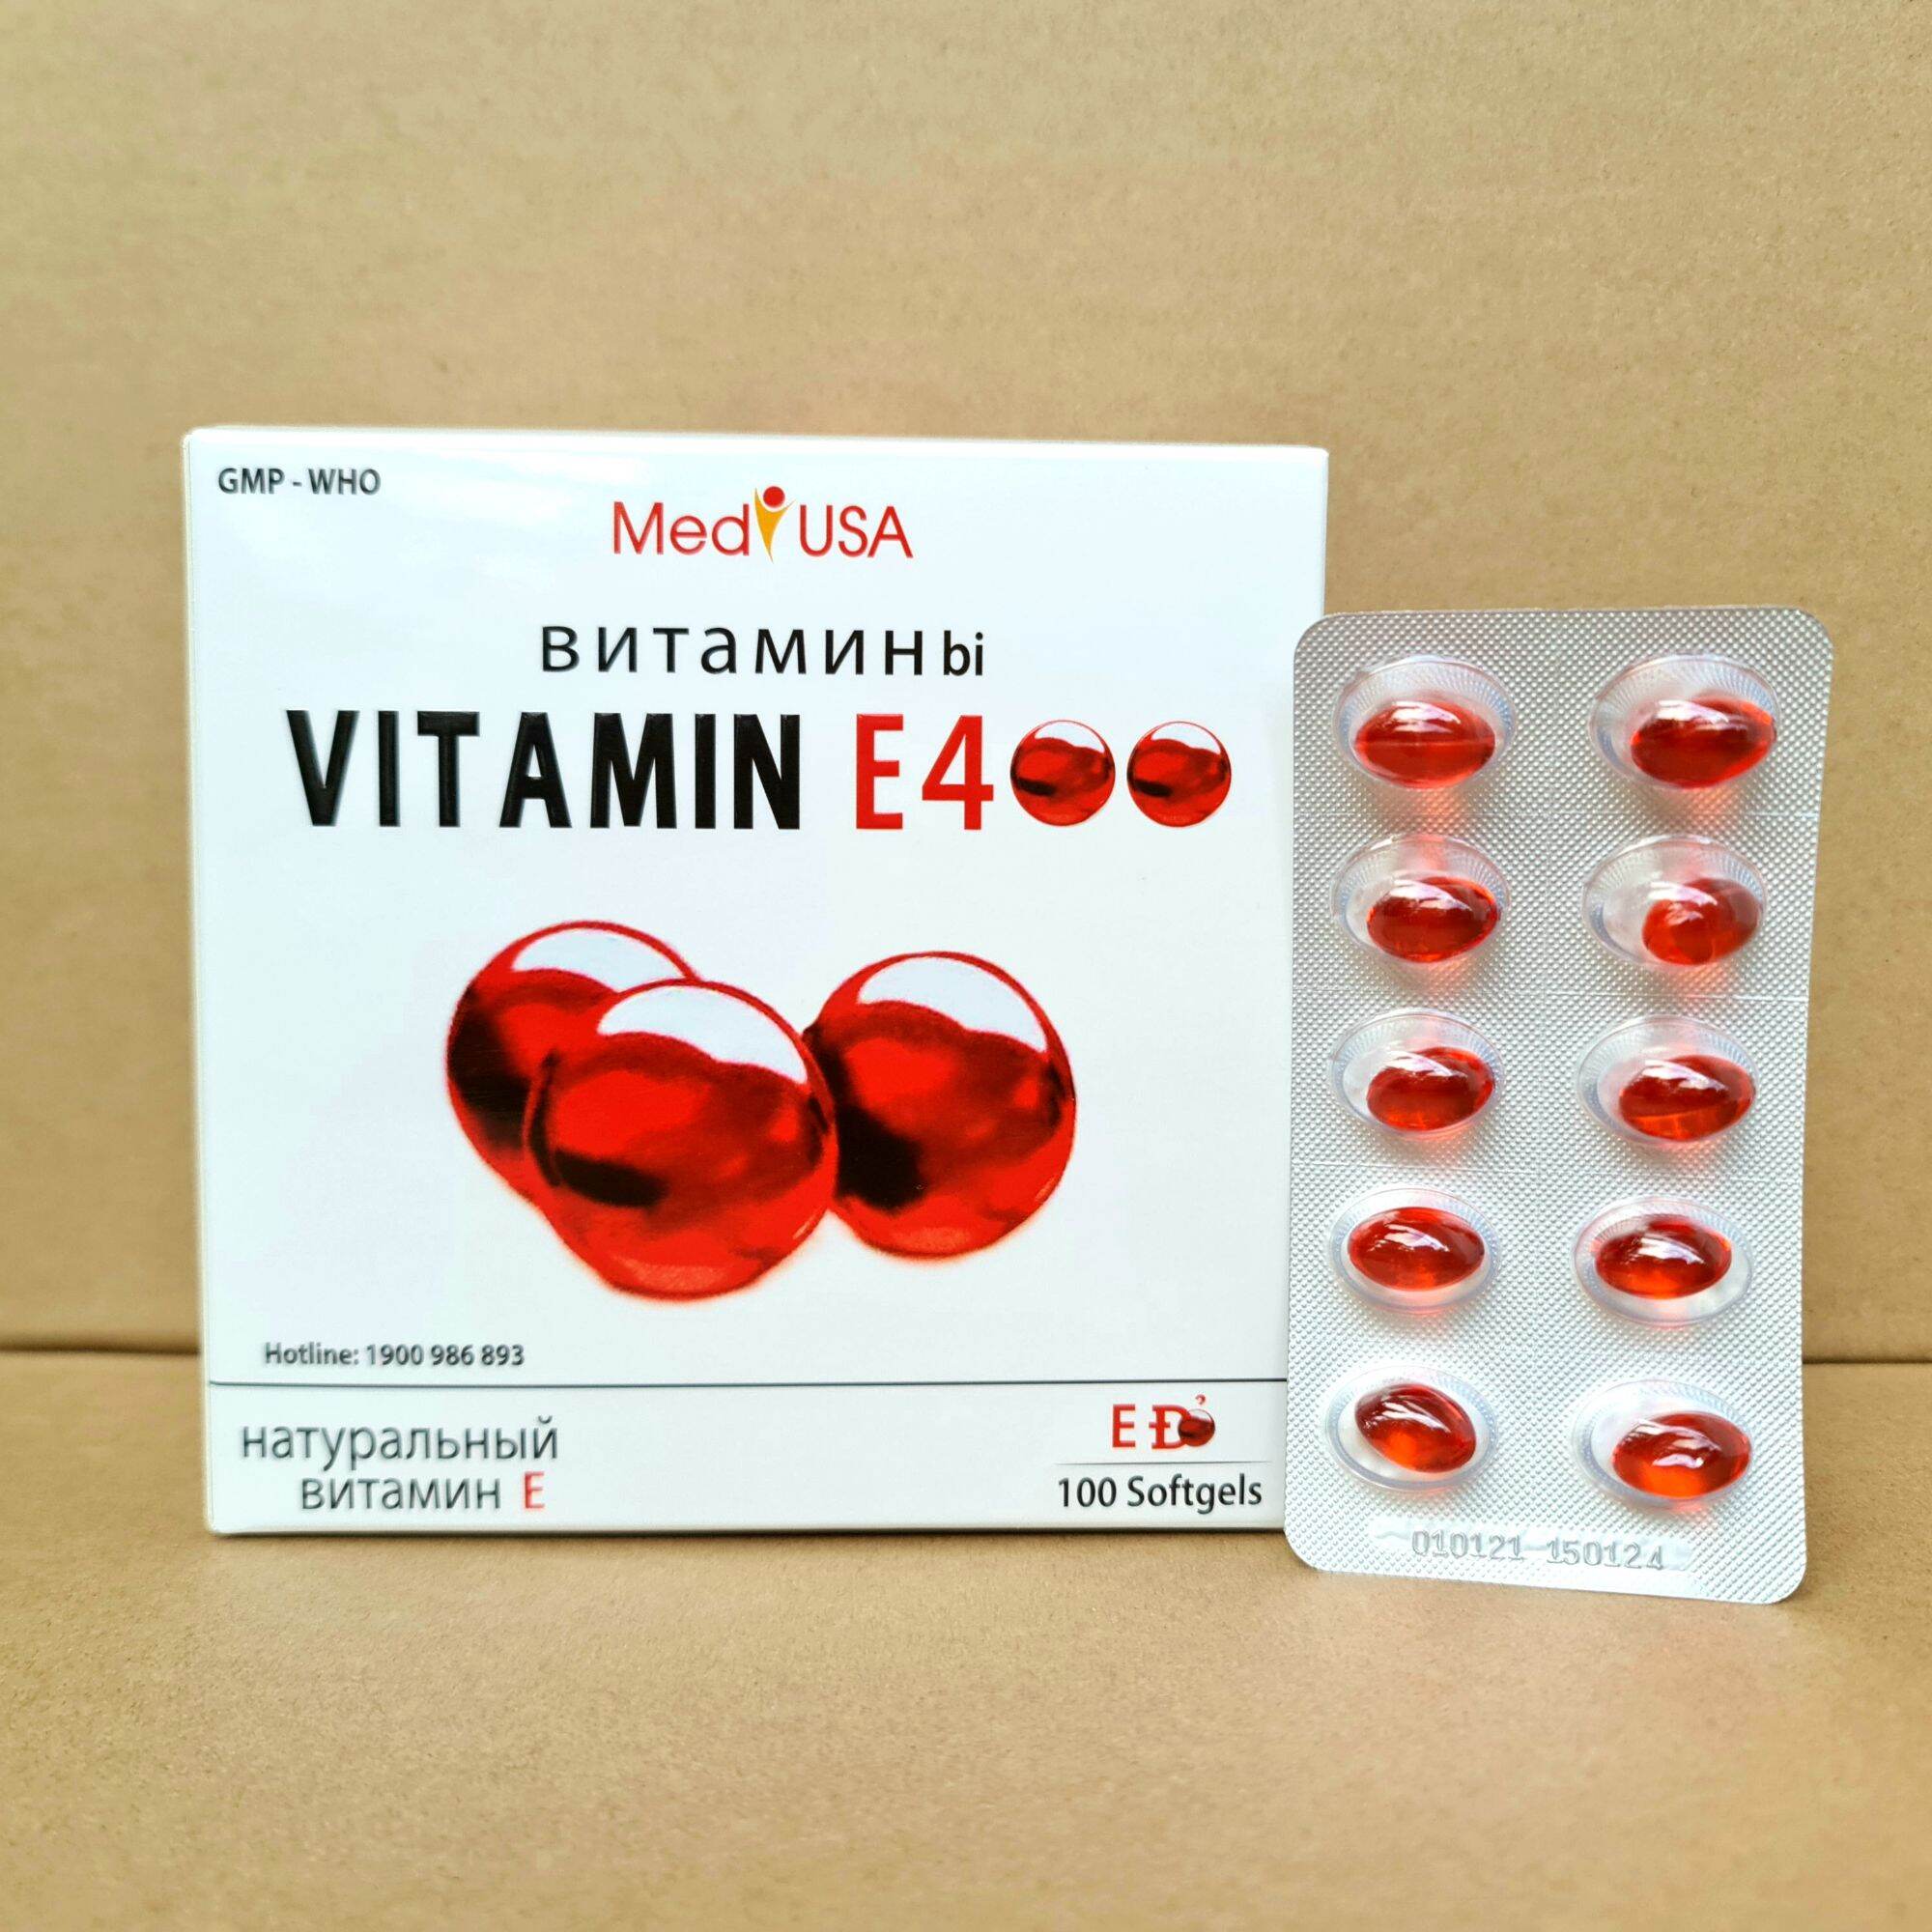 Viên uống vitamin E 400 đẹp da, sáng da, hạn chế lão hoá da hộp 100 viên cao cấp